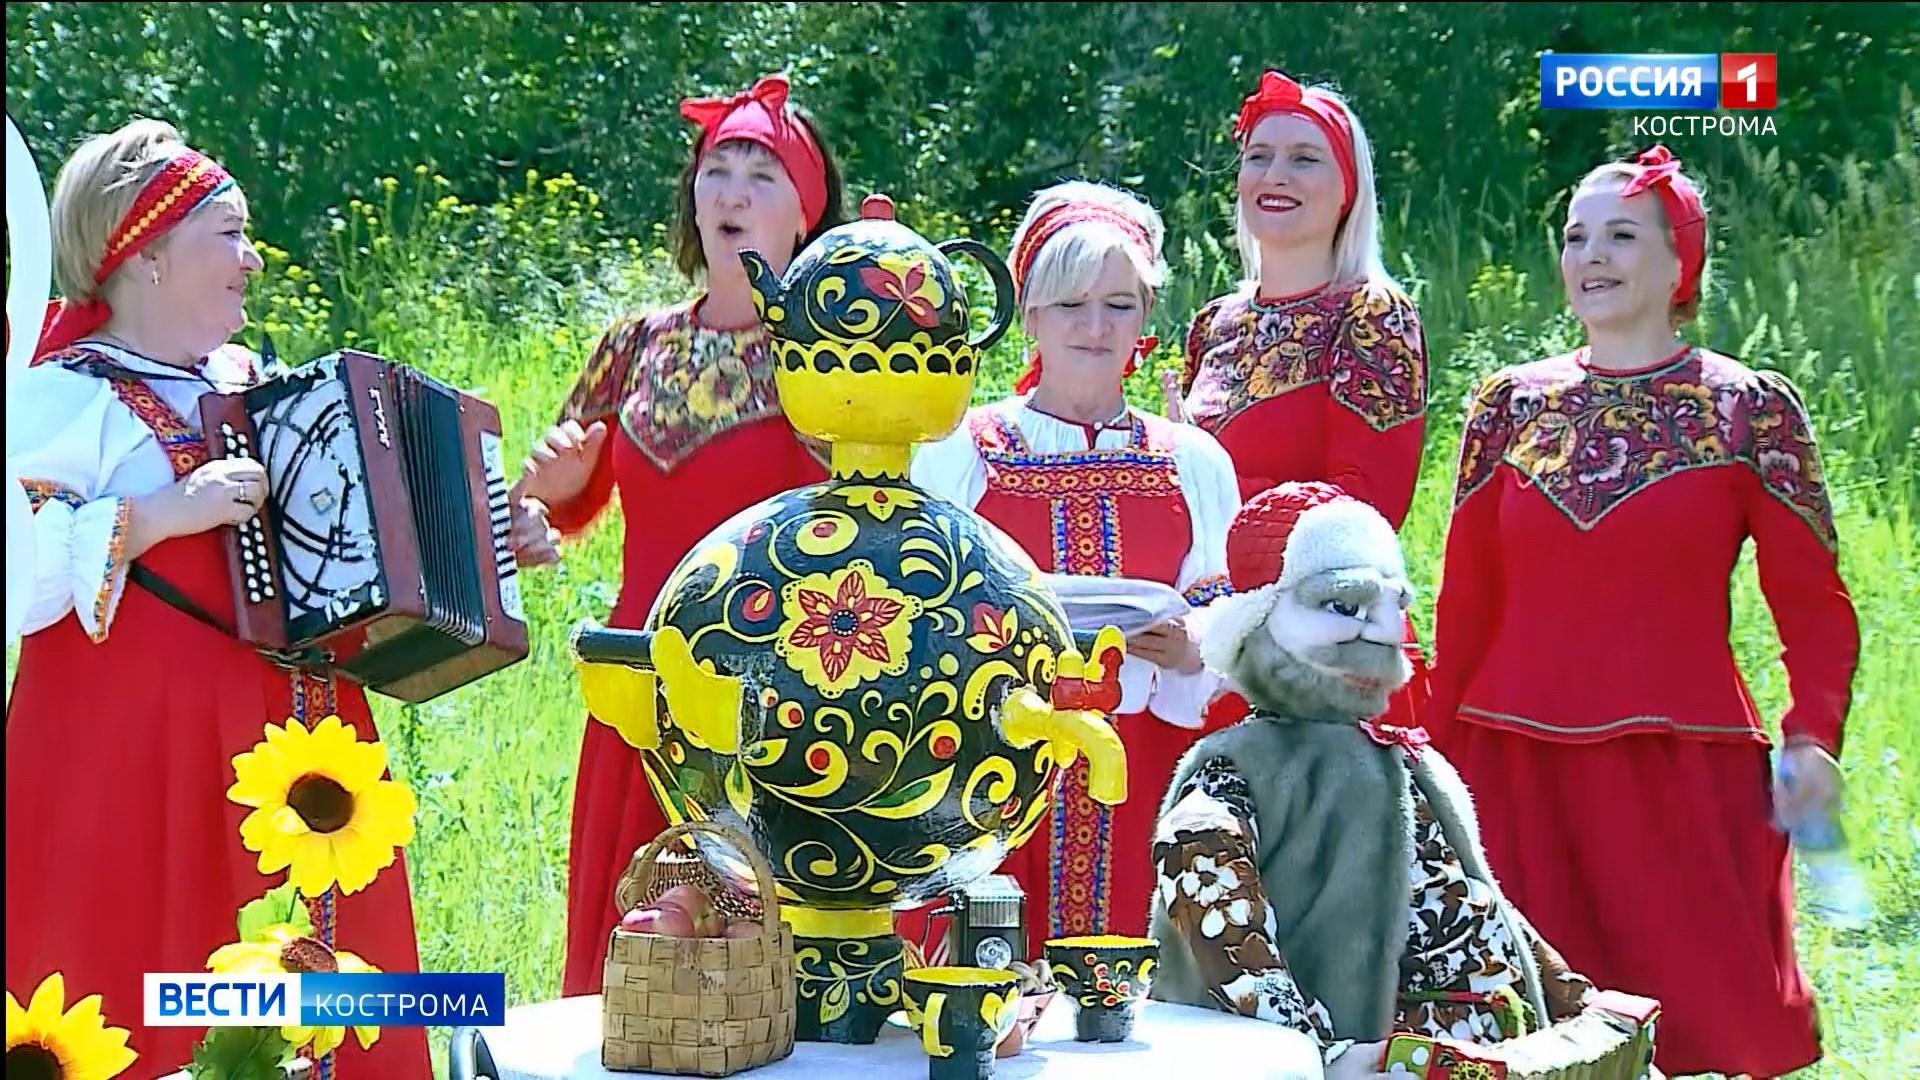 В Костроме вкусно отметили День костромского села - праздник окончания посевной